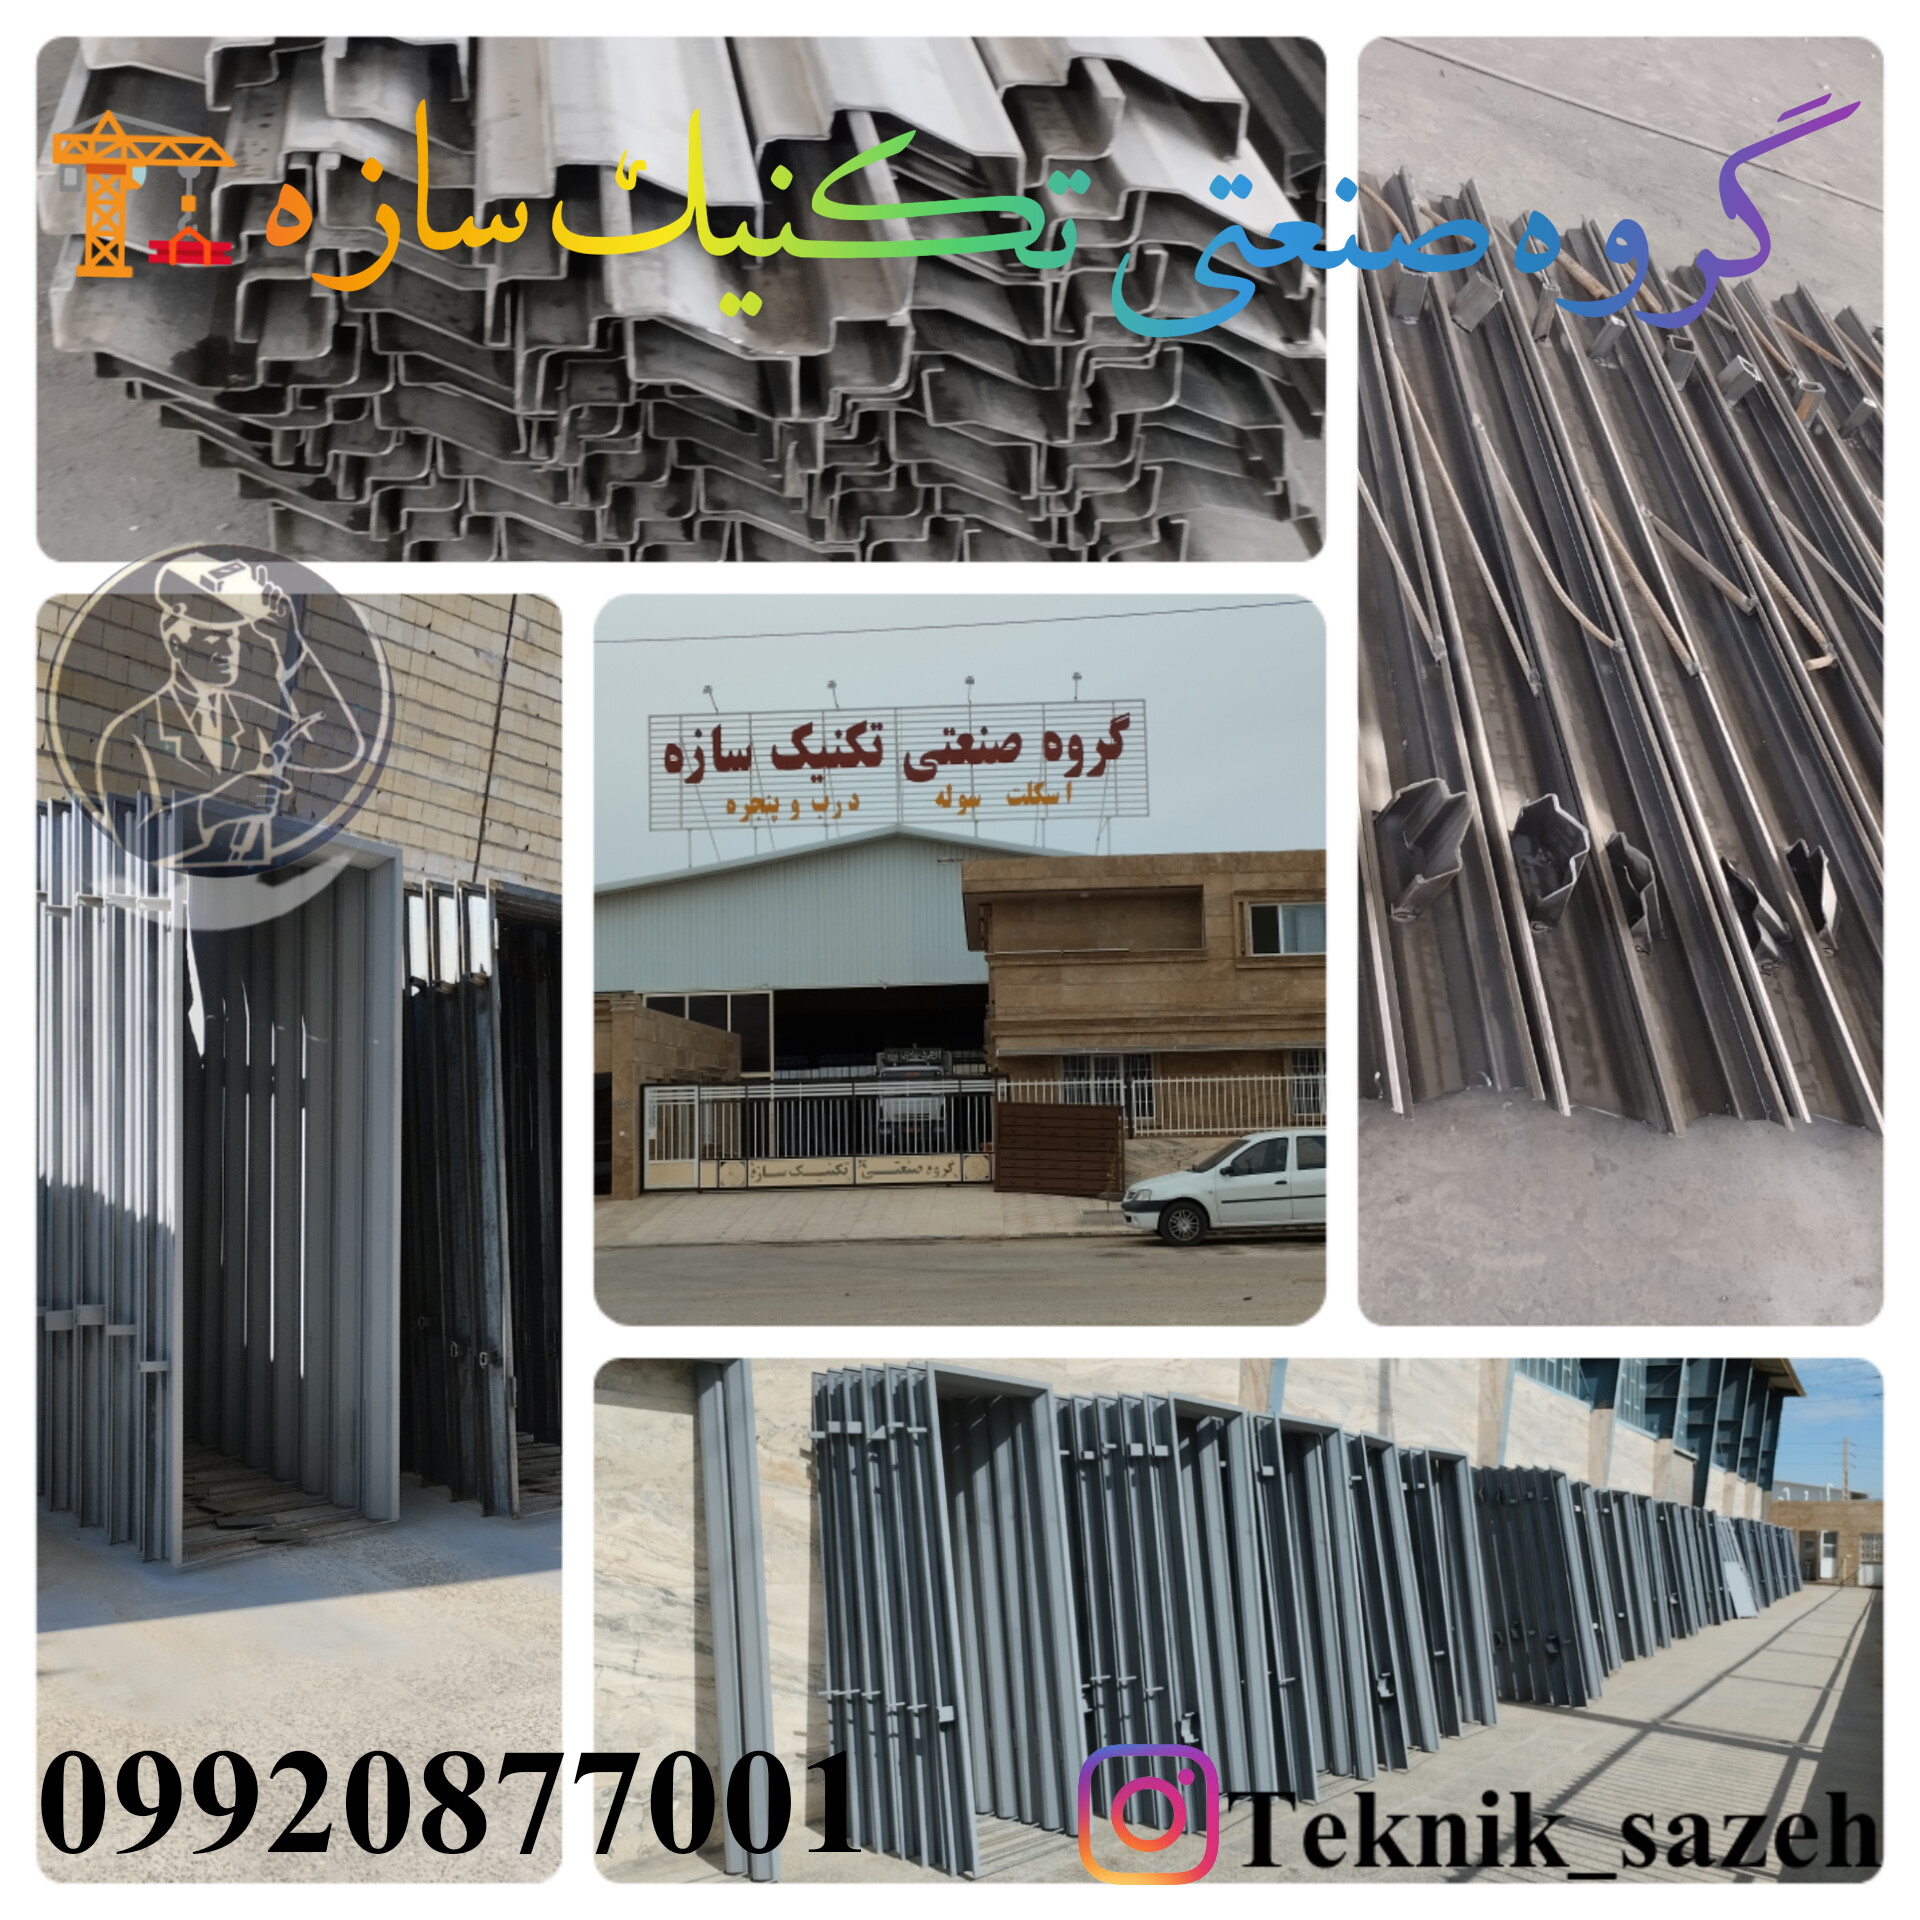 تولید و پخش چهار چوب فلزی گروه صنعتی تکنیک سازه در شیراز09920877001